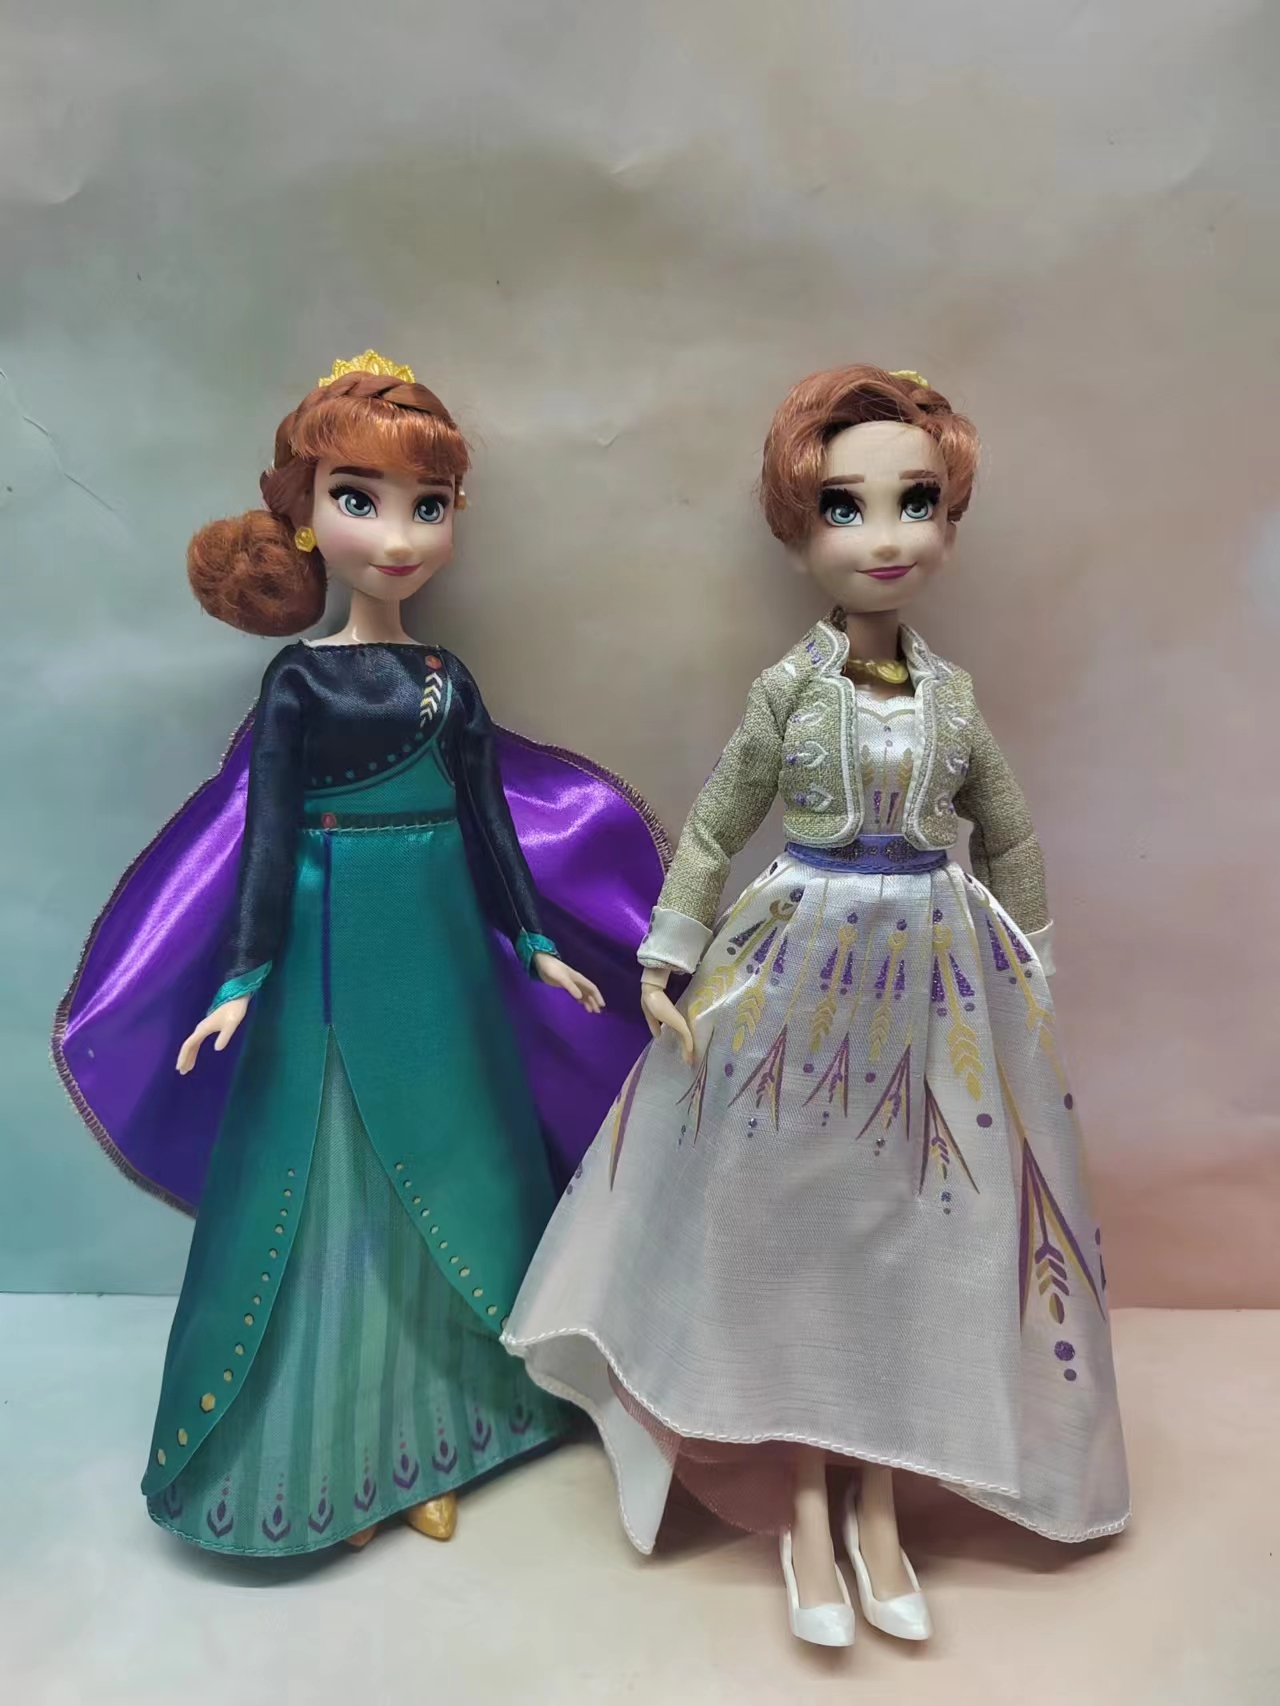 品牌冰雪奇缘2安娜唱歌公主娃娃正版散货无包装安娜娃娃玩具礼物